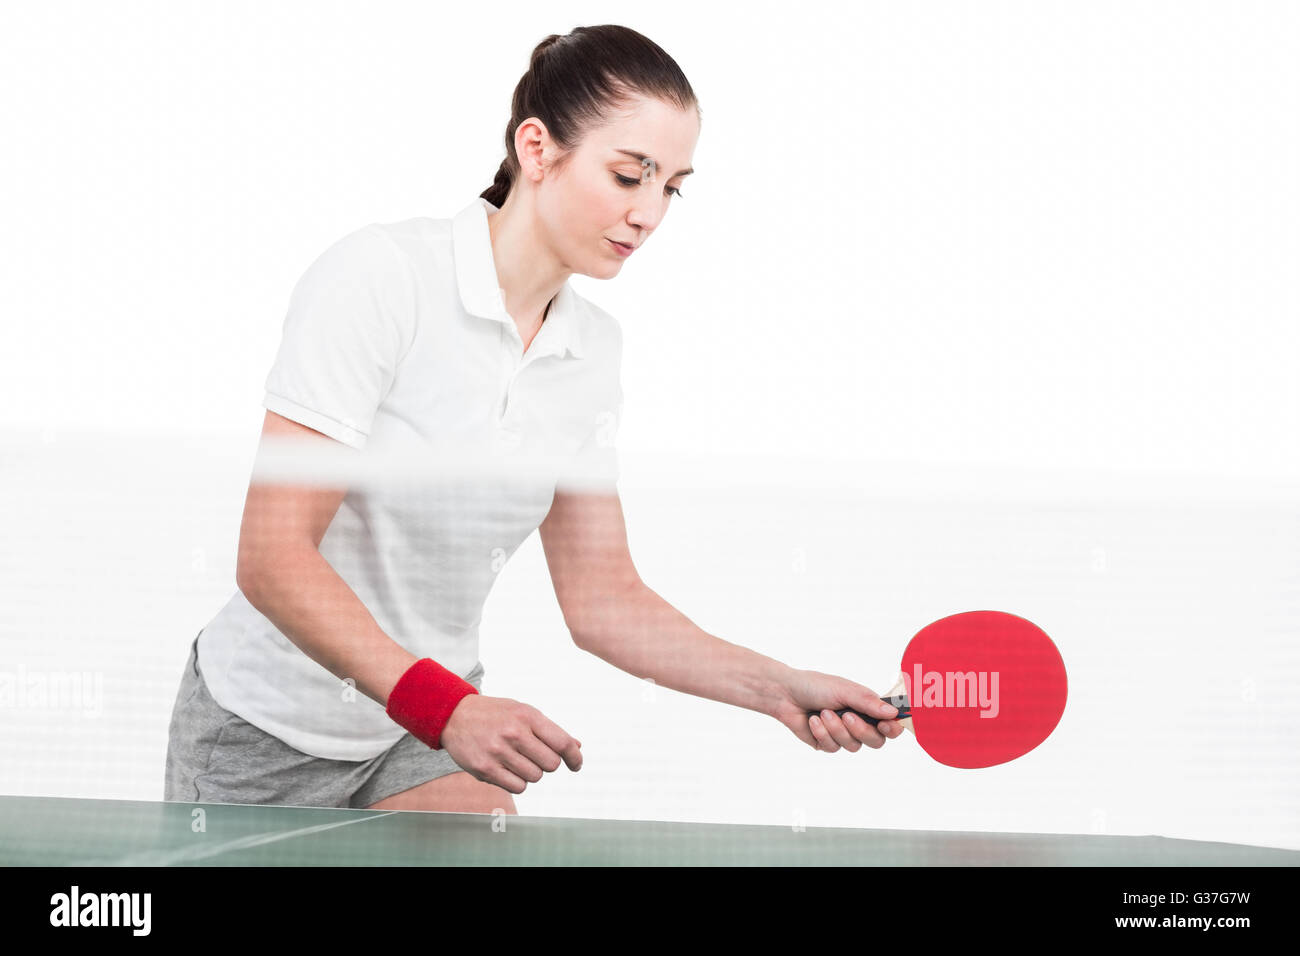 Ping pong jeu de l'athlète féminine Banque D'Images